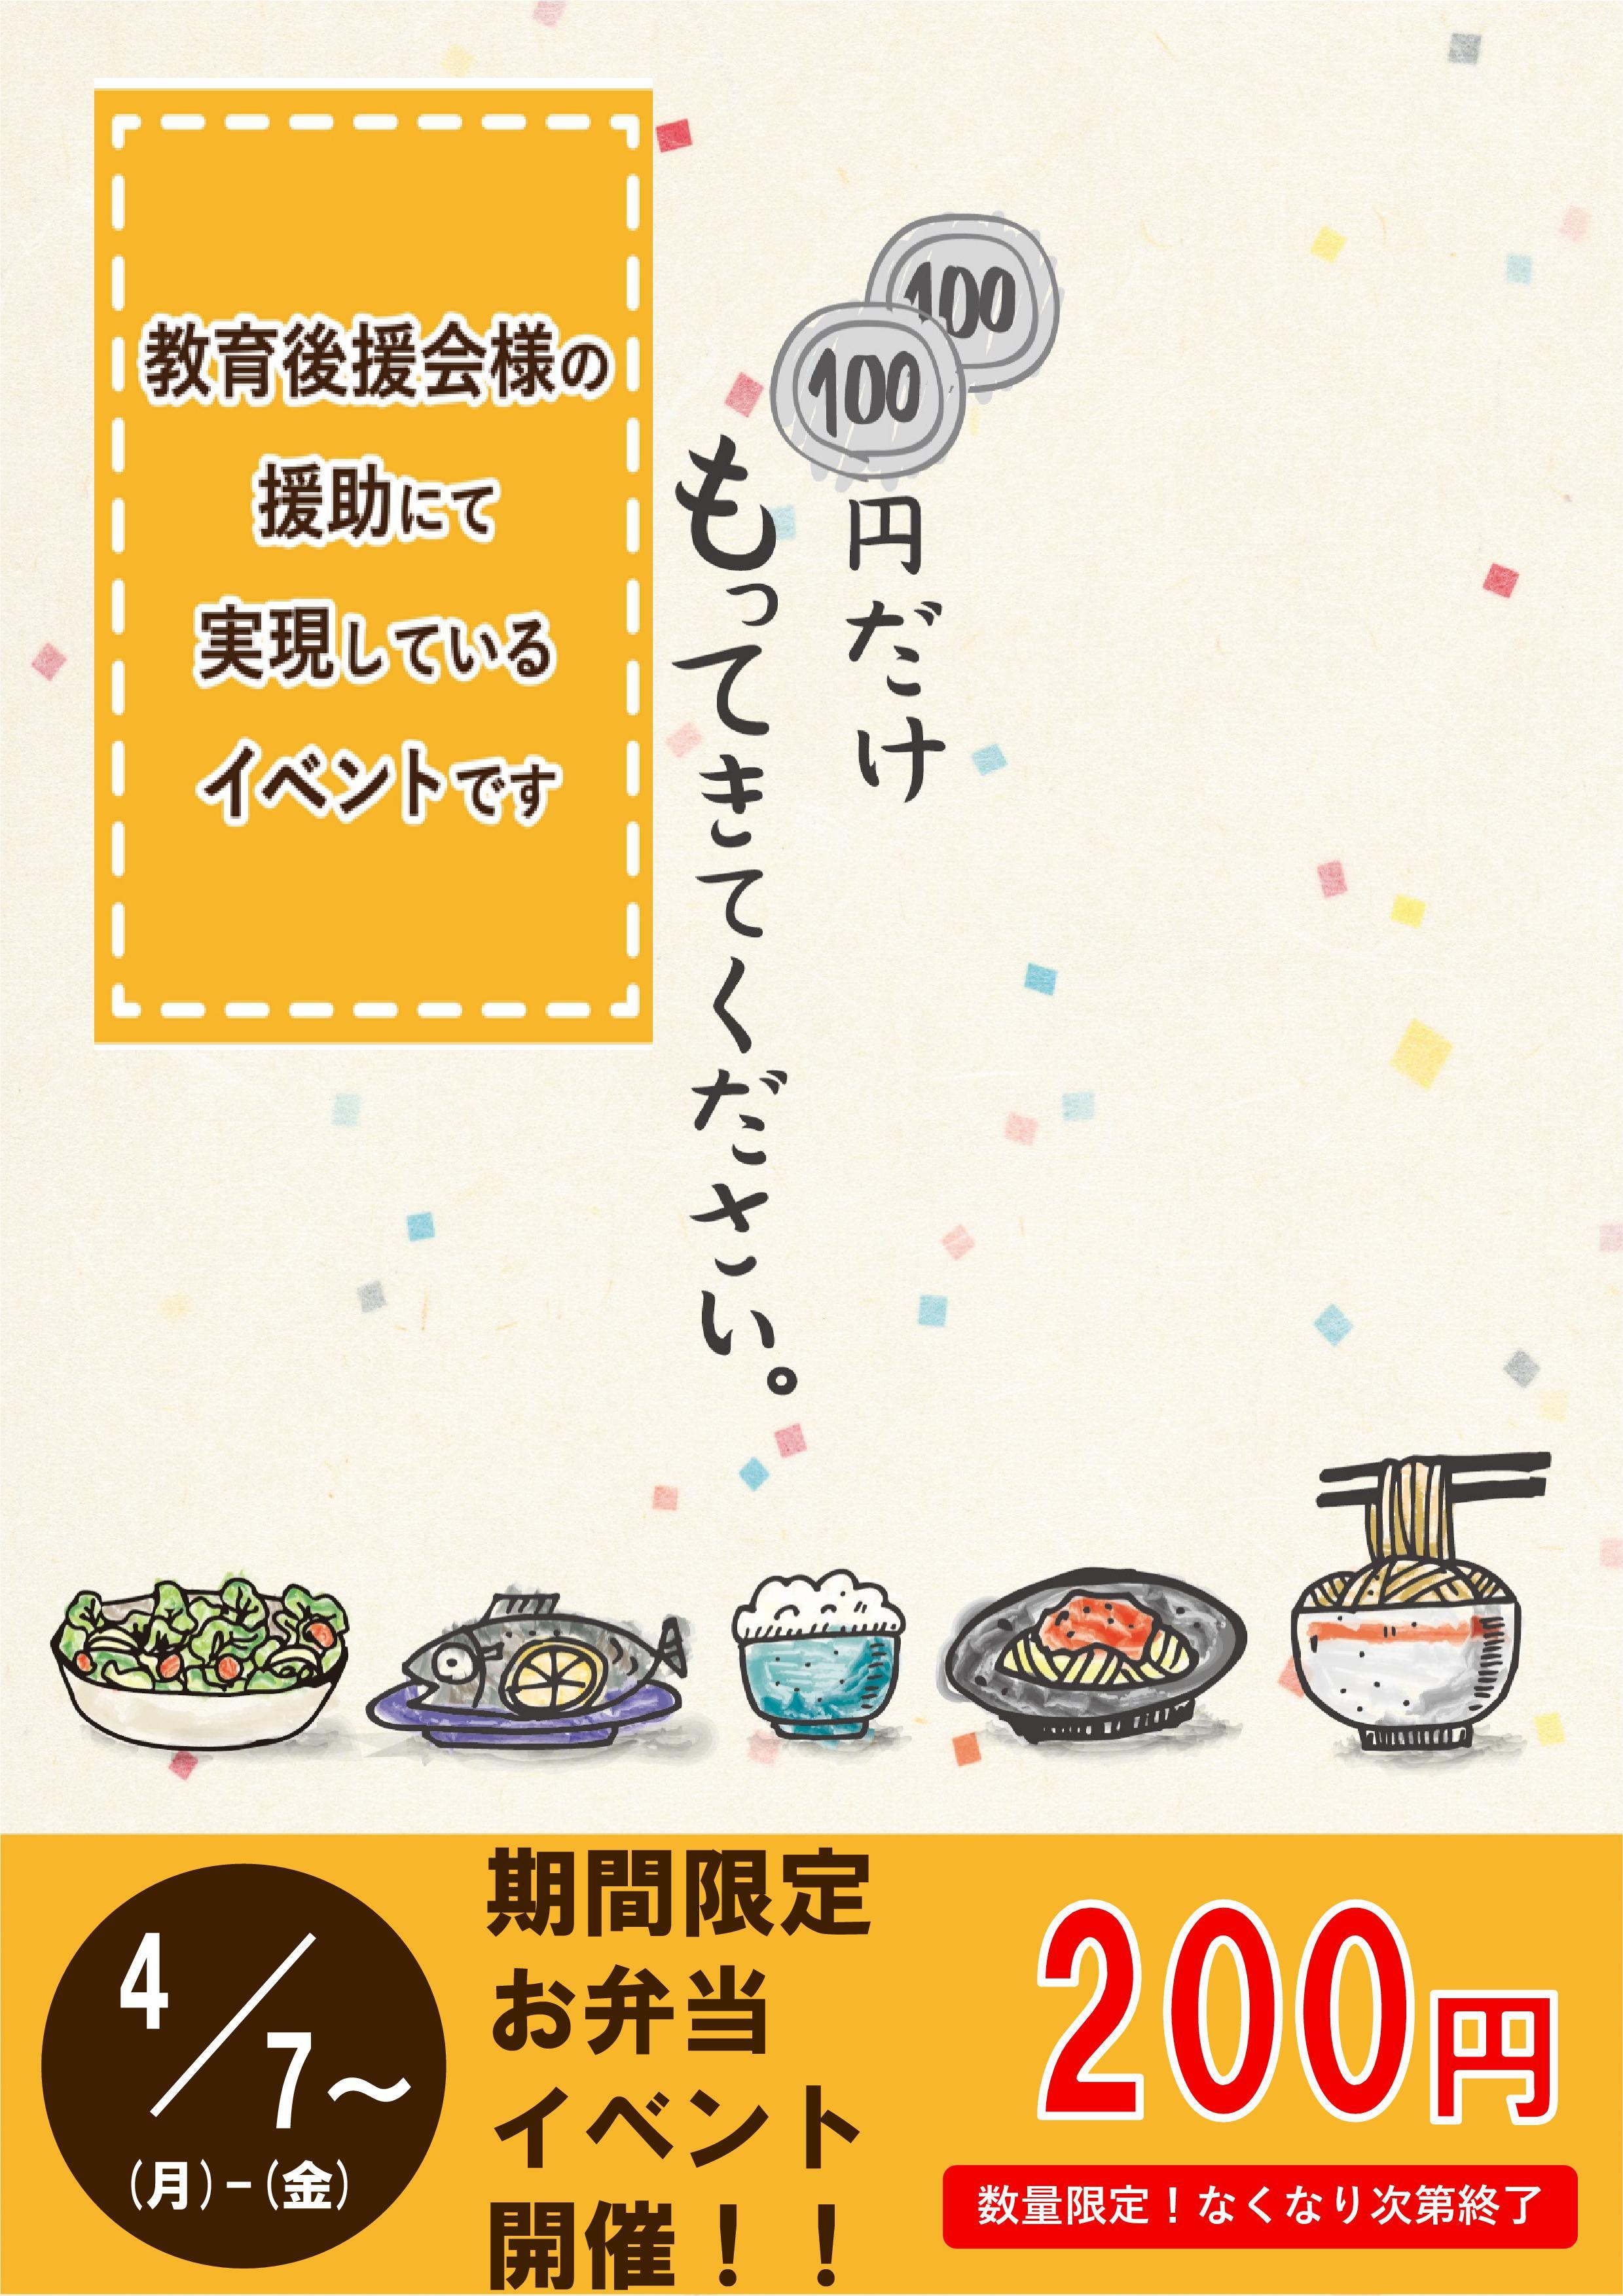 敬愛大学が学生食堂でテイクアウトの200円弁当を提供 -- 教育後援会のサポート、コロナ禍でもしっかり栄養を